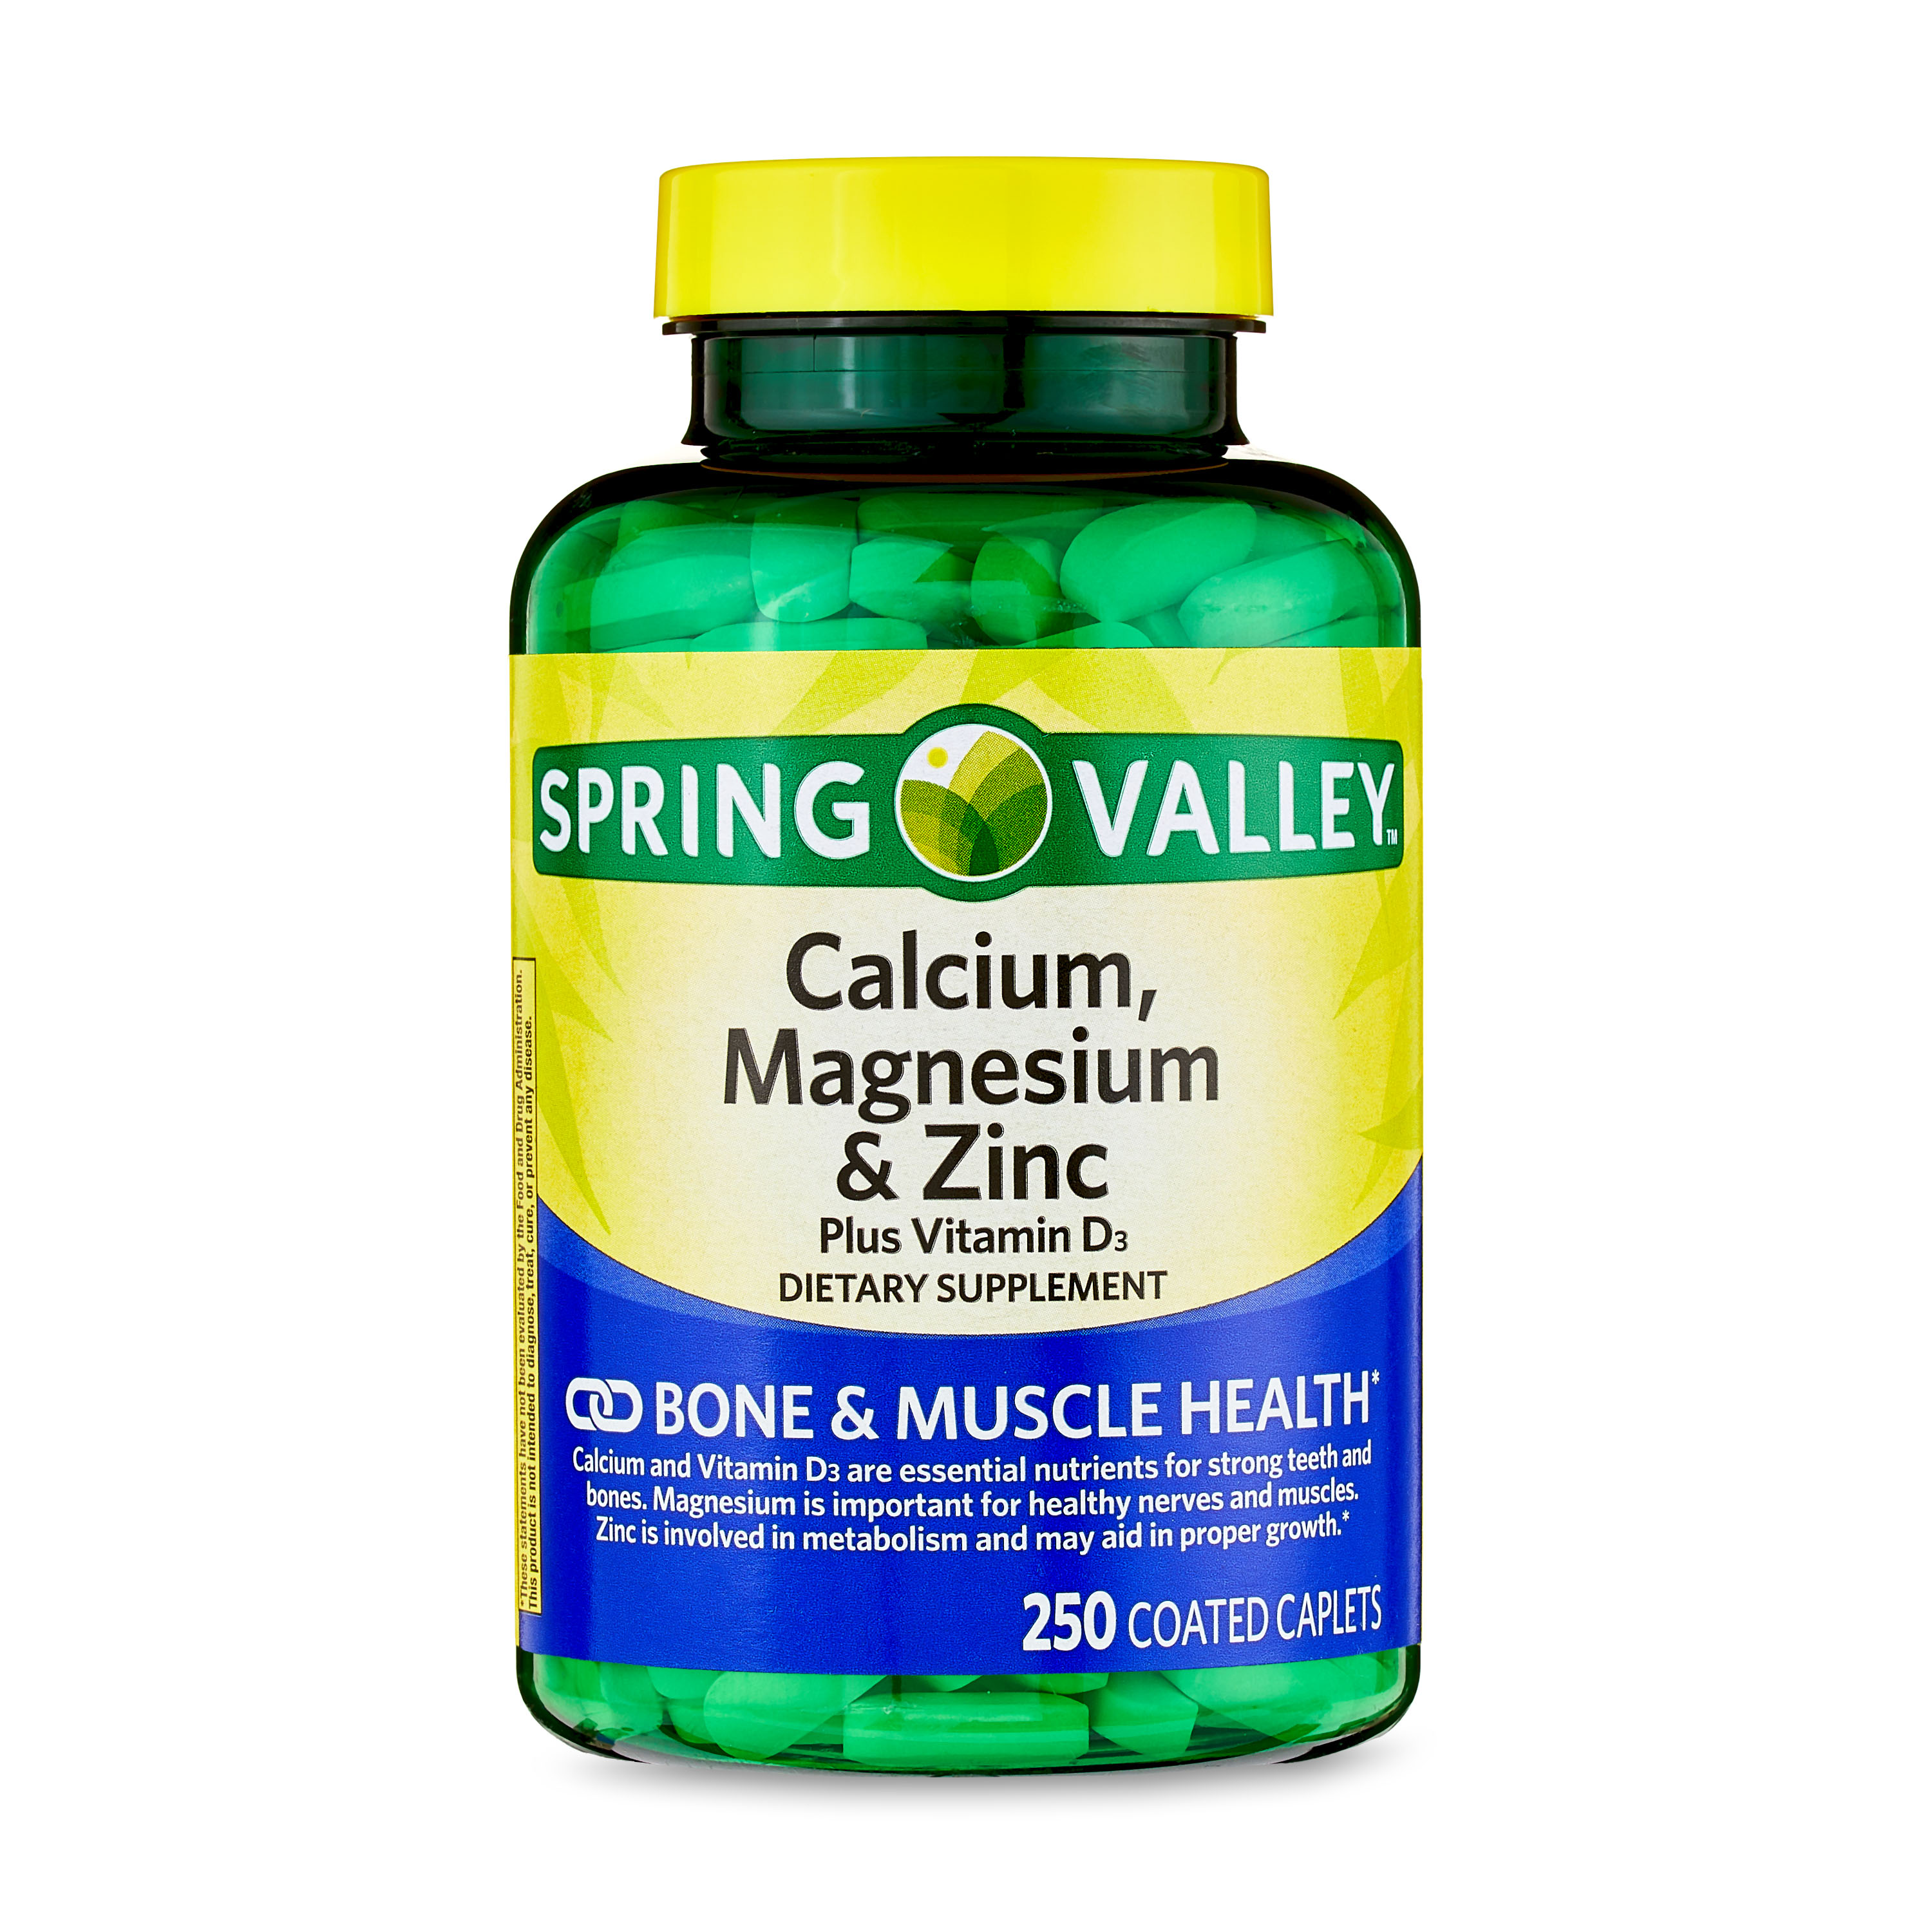 Spring Valley Calcium, Magnesium & Zinc Plus Vitamin D3 Coated Caplets, 250 Count - image 1 of 10